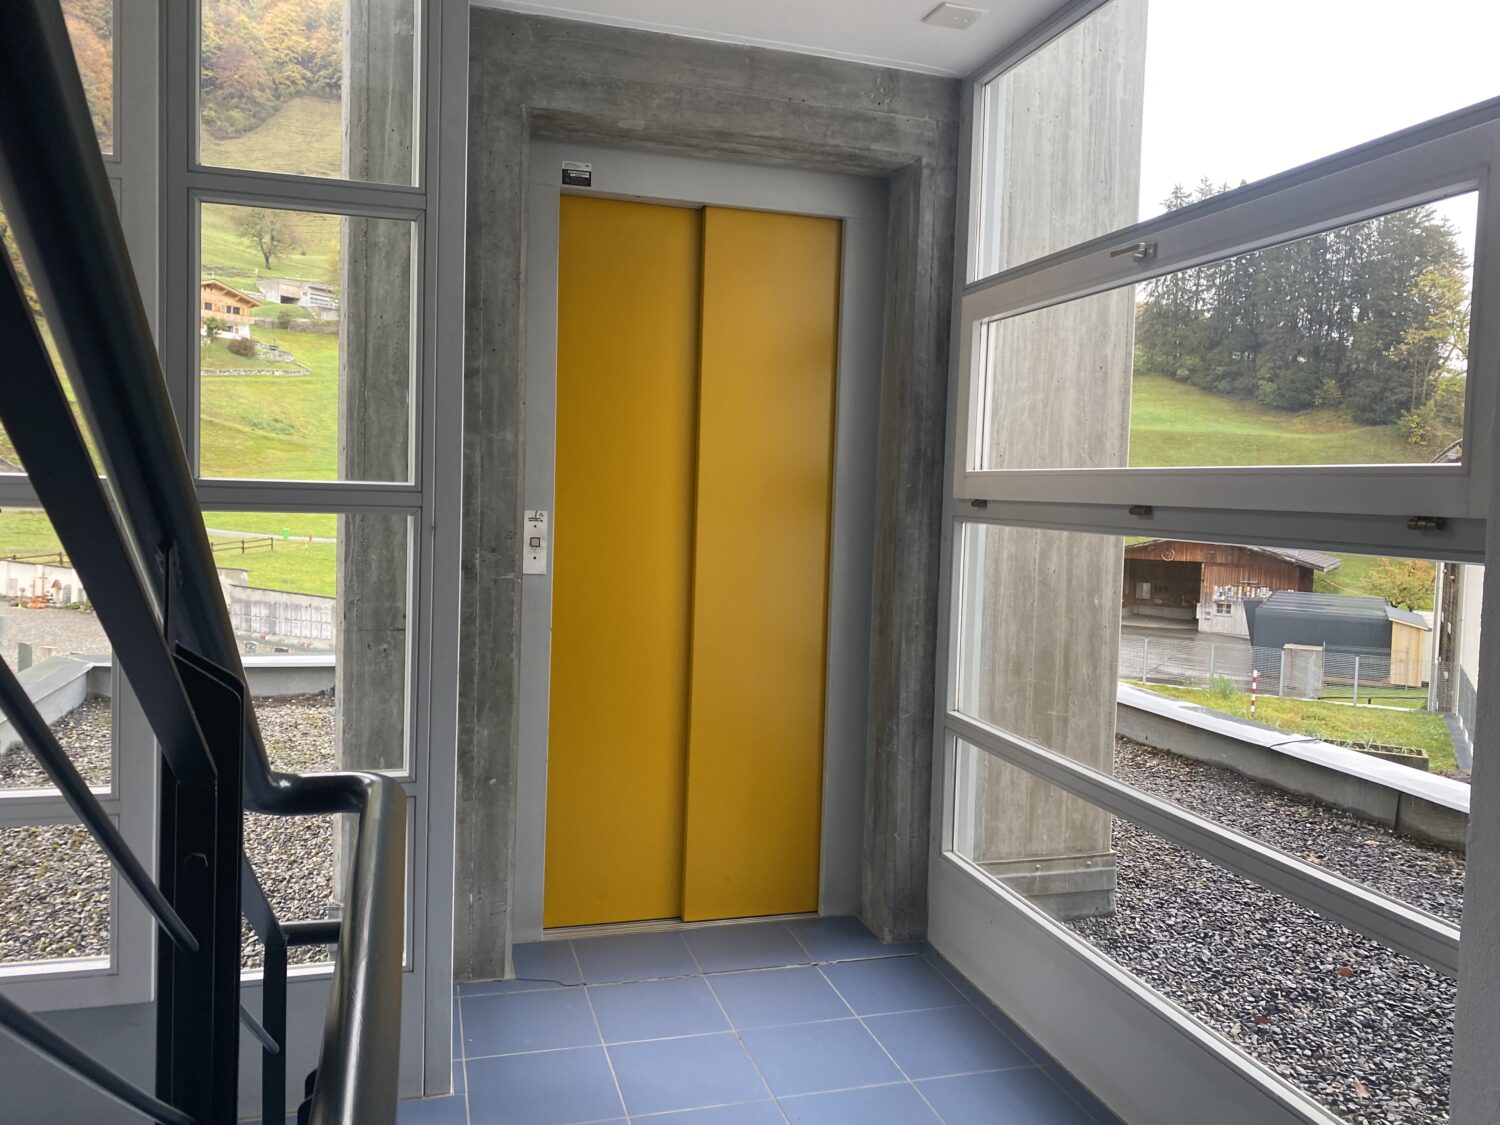 Wohnung Grüsch - Treppenhaus mit Personenlift